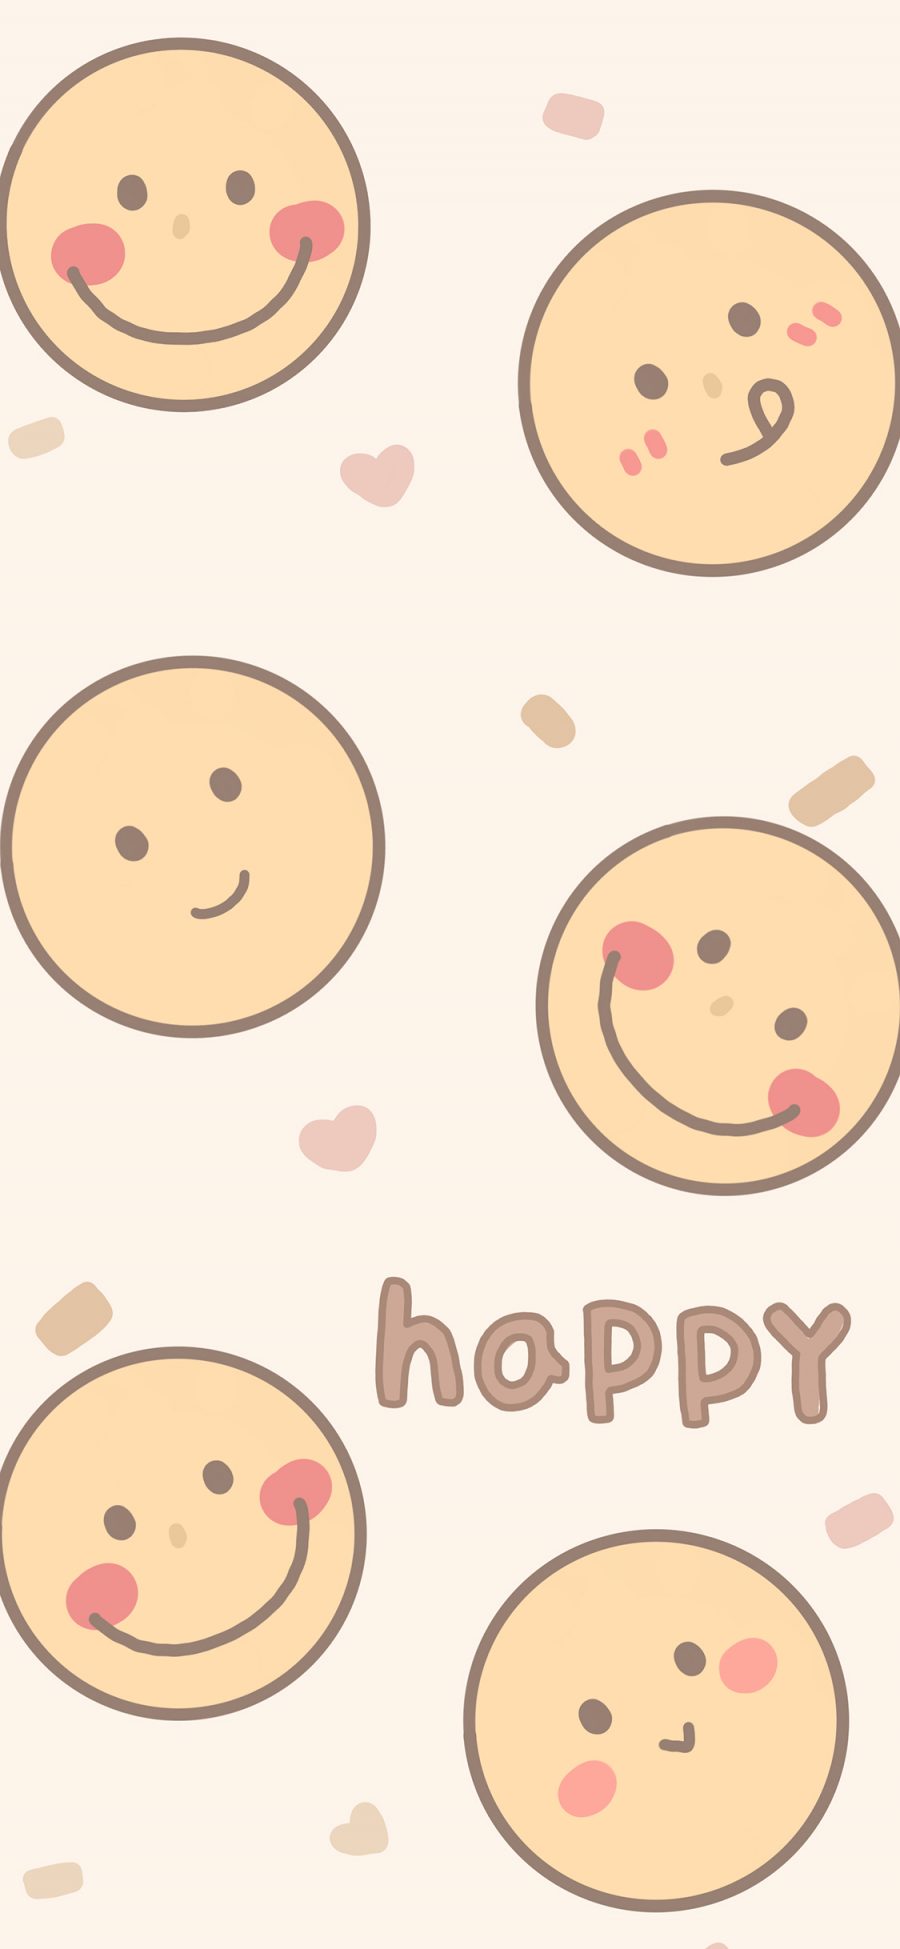 [2436×1125]表情 笑脸 可爱 平铺 happy 苹果手机动漫壁纸图片